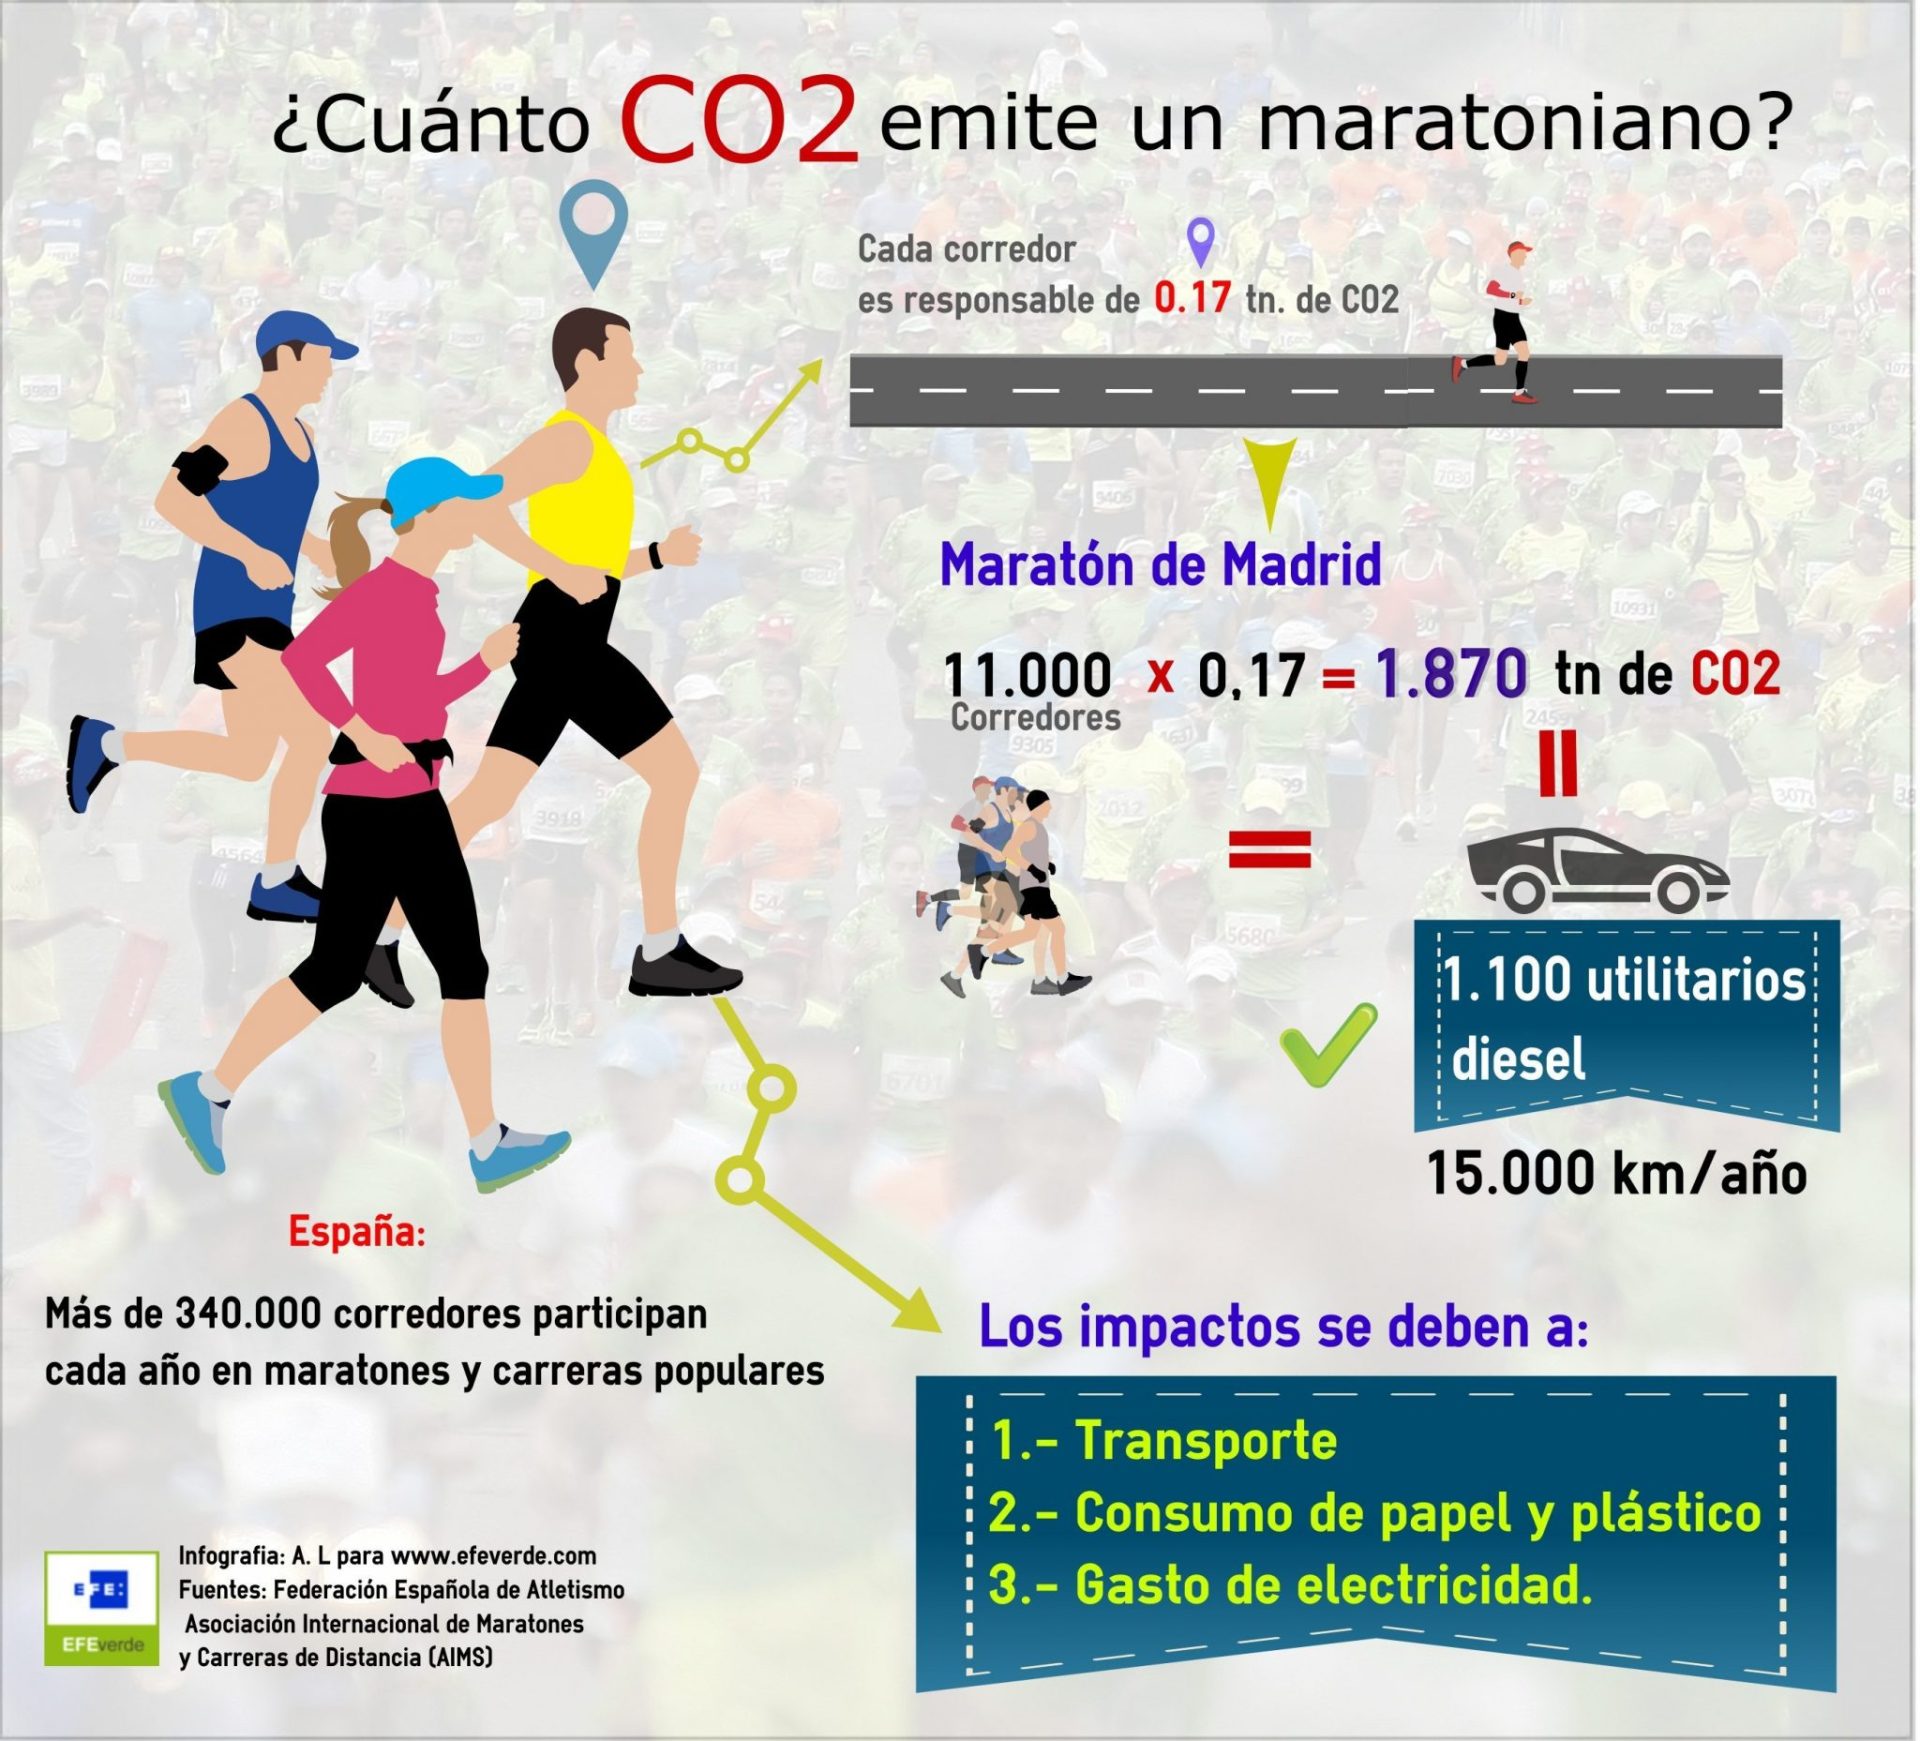 Tloda actividad humana tiene impacto y deja una huella de carbono. Esta es la de los maratones. Infografía de A. L. para EFEverde. Pincha para ampliar